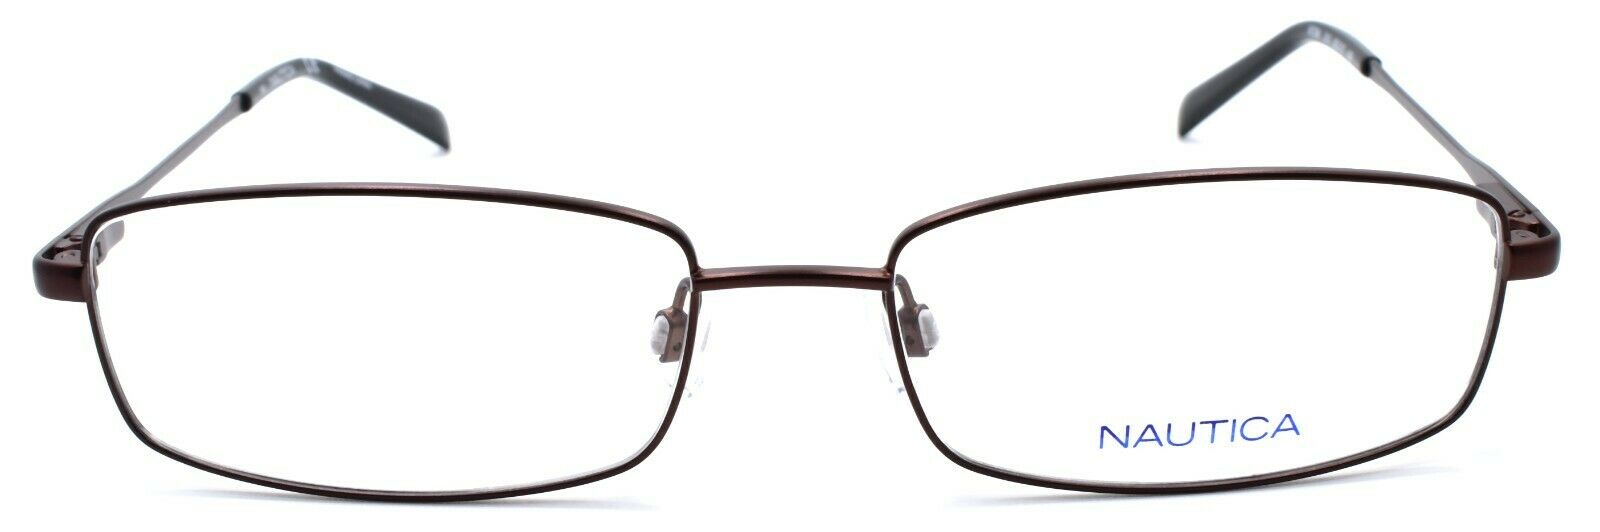 2-Nautica N7298 210 Men's Eyeglasses Frames 55-17-140 Satin Brown-688940462142-IKSpecs